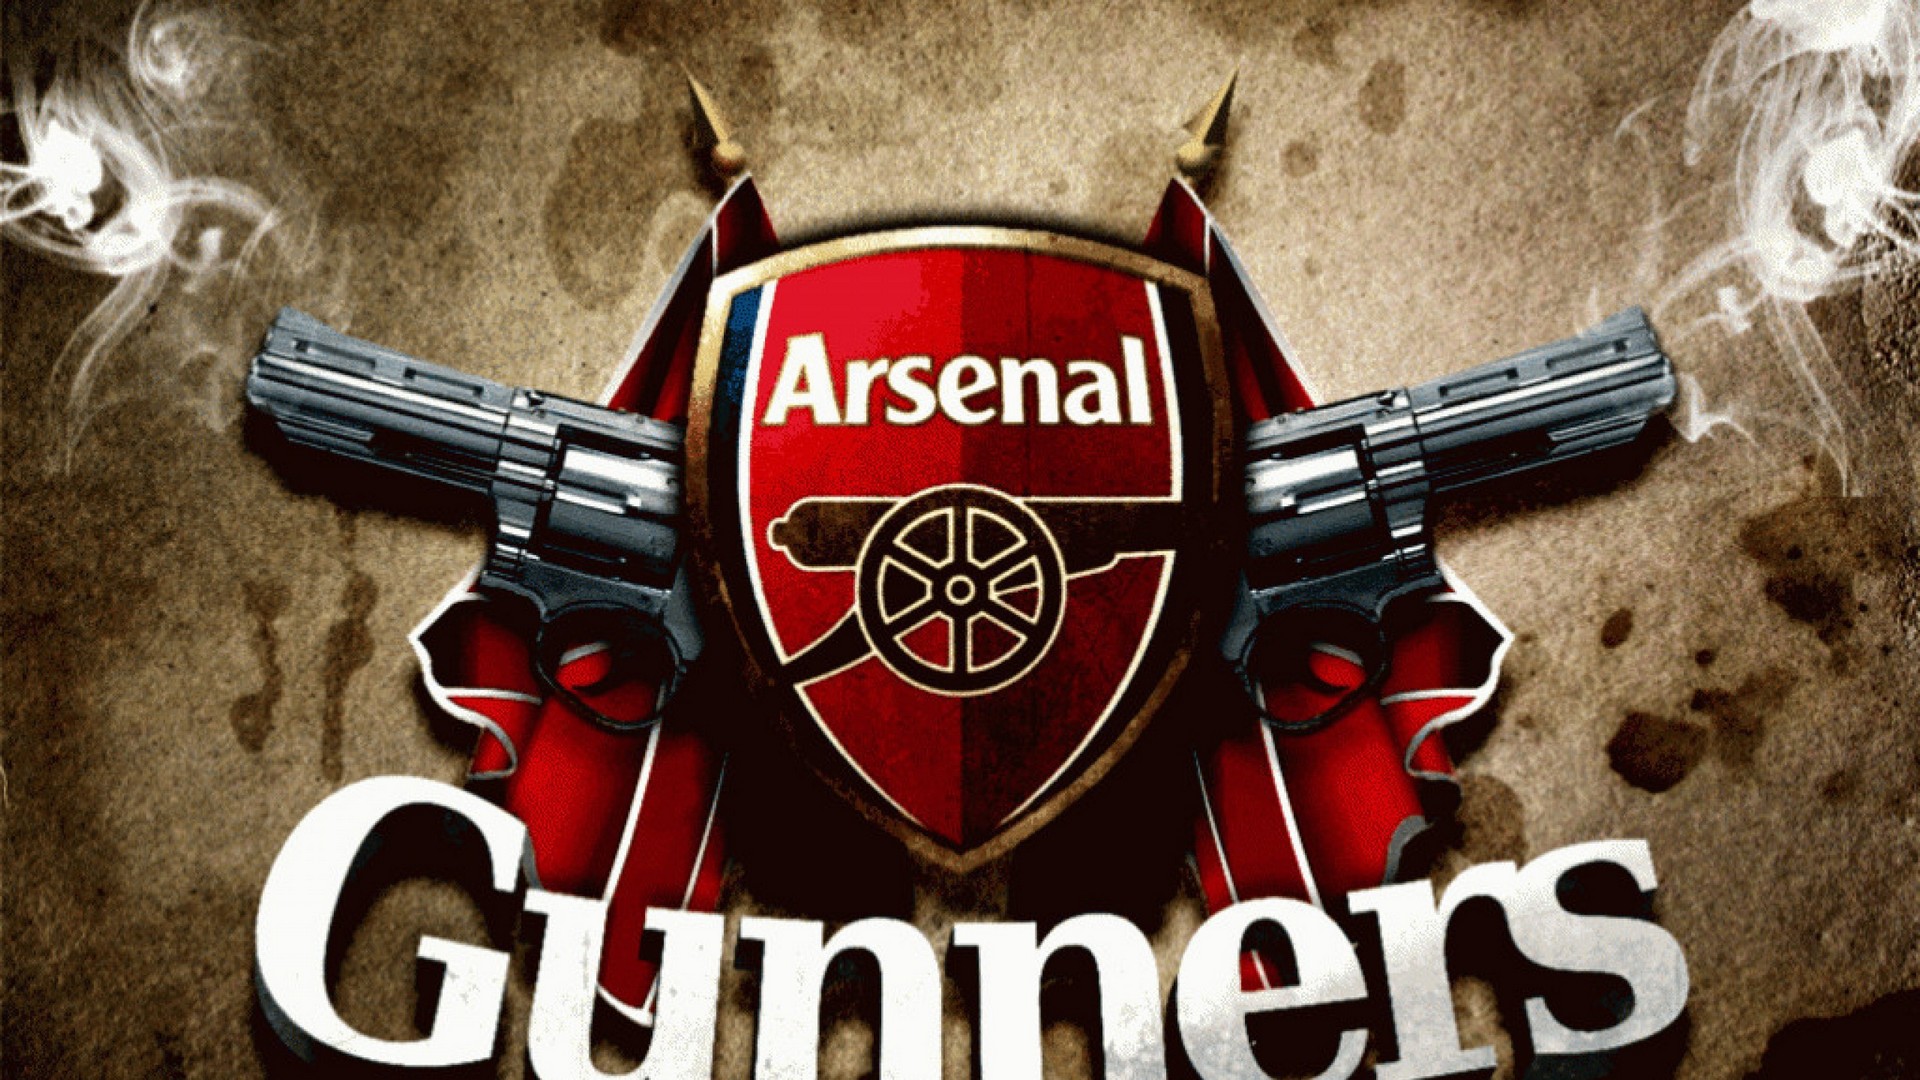 HD Arsenal Wallpaper Gunners